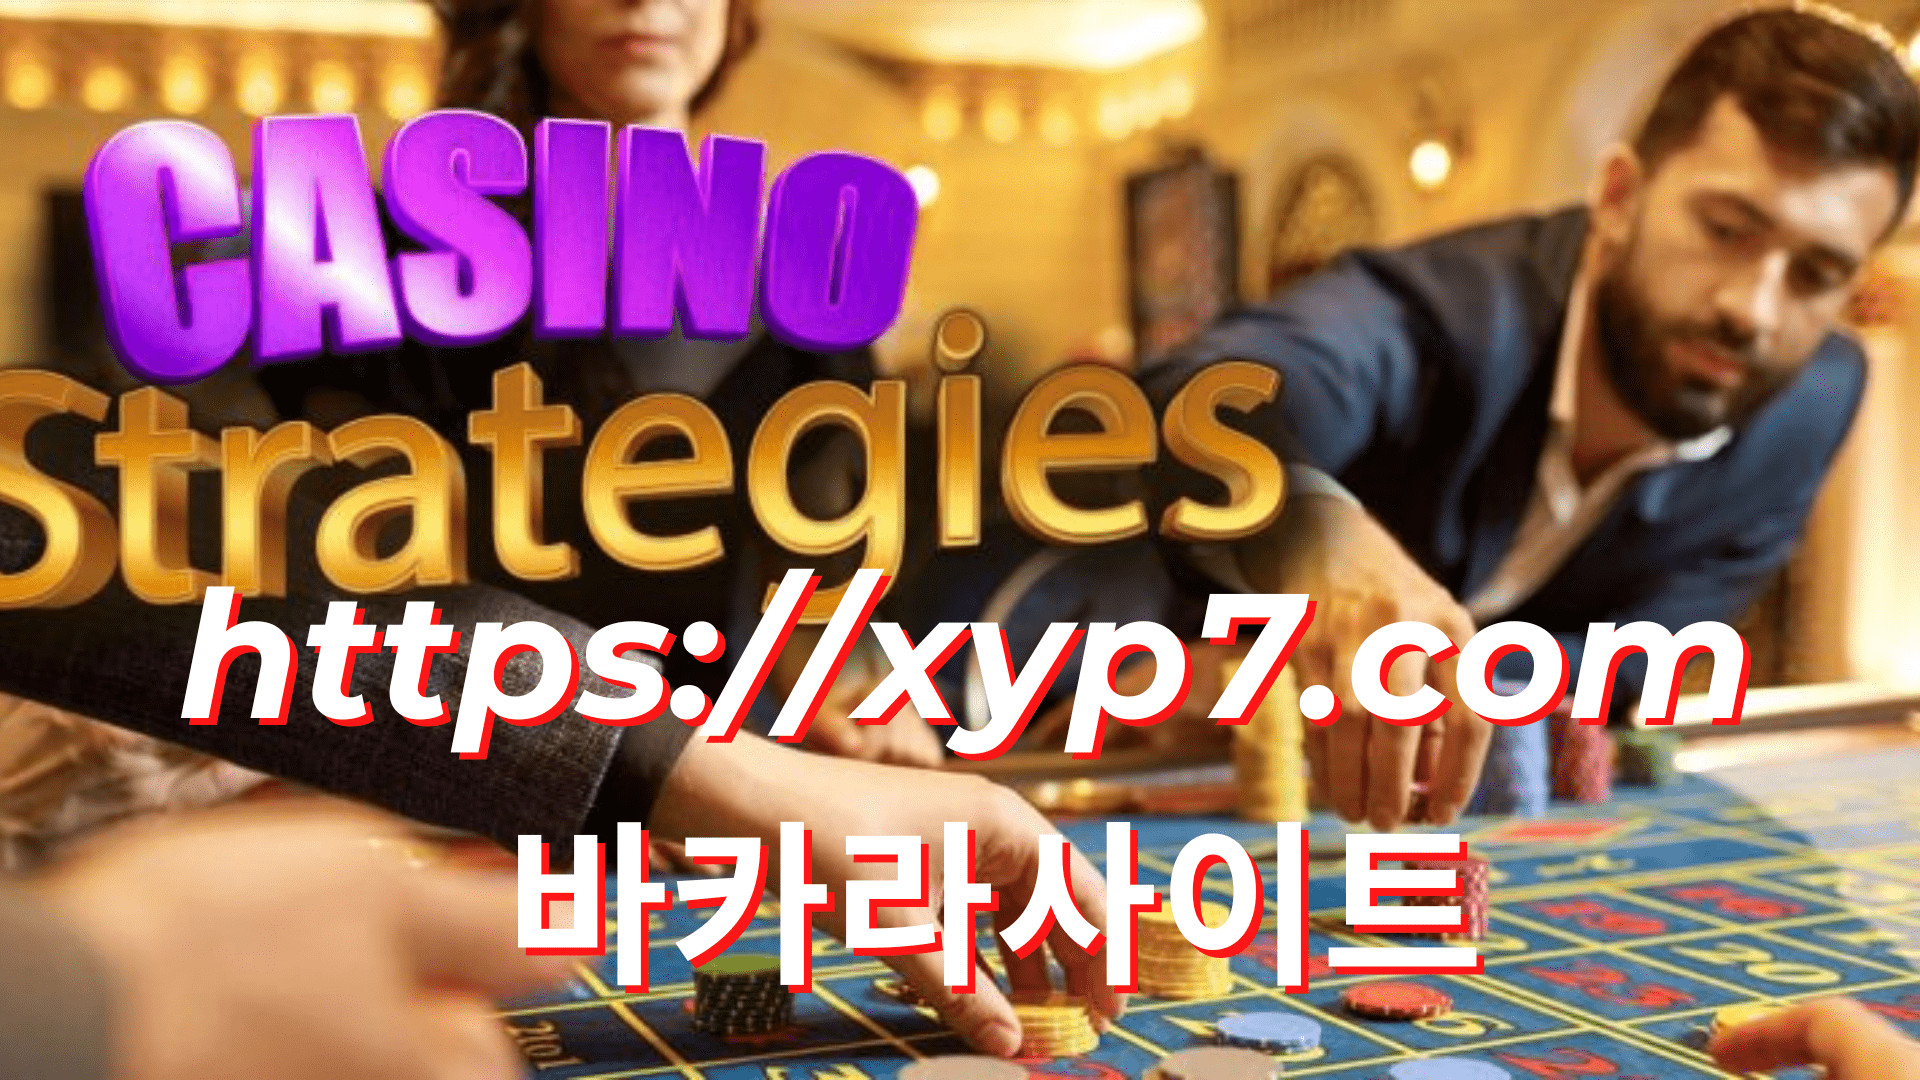 8 Insane Casino Gambling Strategies